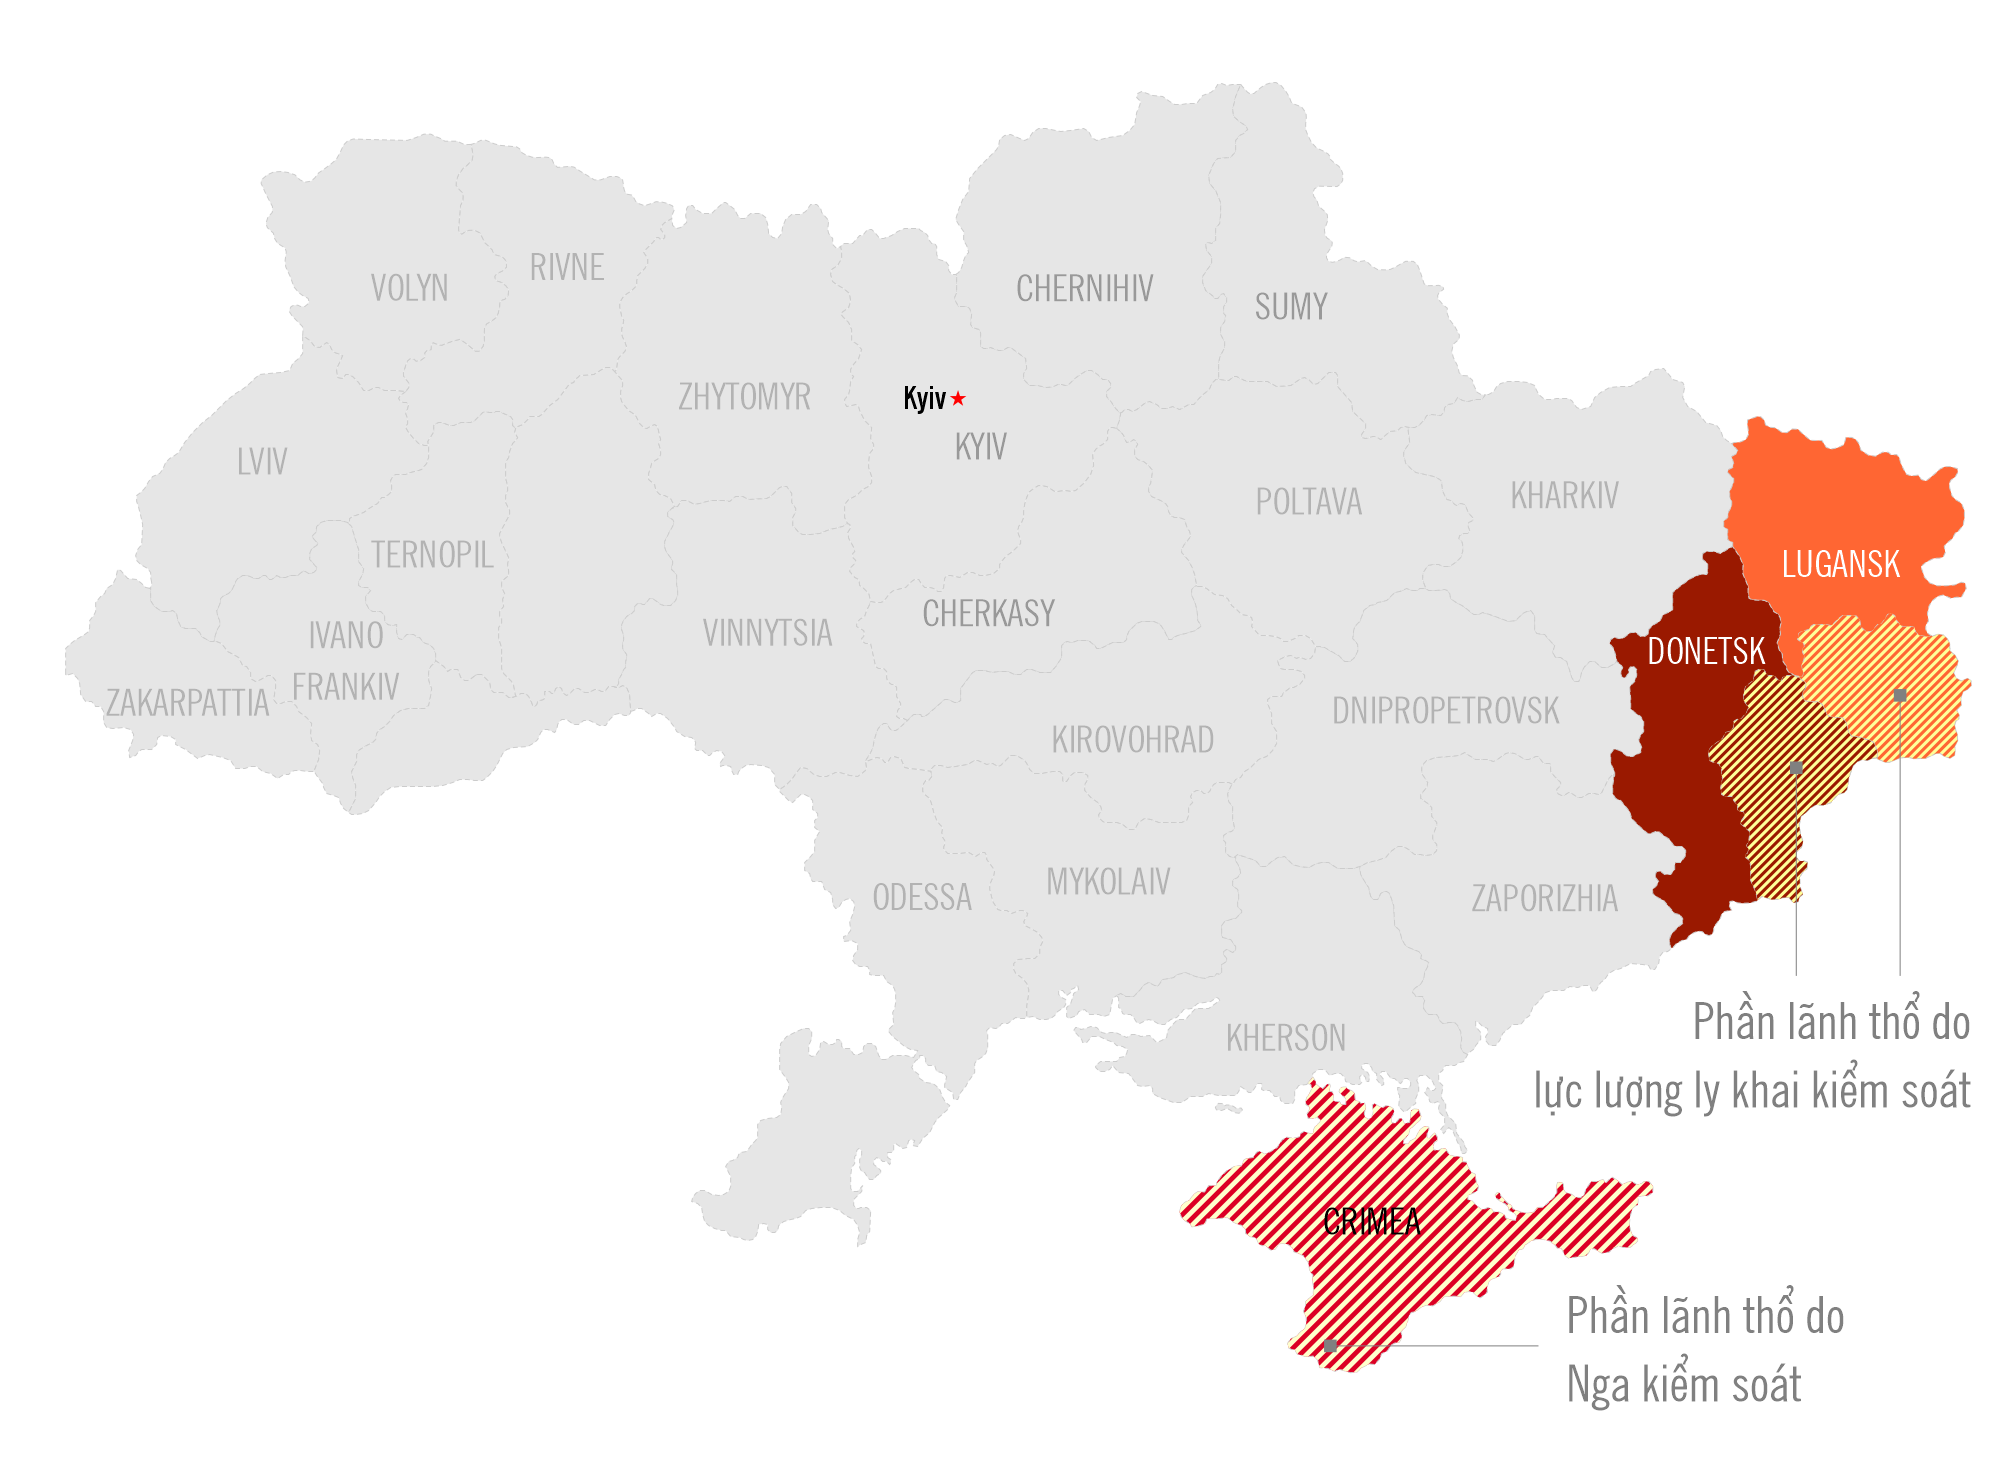 Trong tương lai, Nga có thể chiếm đóng Donbas và bản đồ chiếm đóng này sẽ hiển thị những nguy cơ và ảnh hưởng mà Nga có thể gây ra cho khu vực này. Hãy cùng xem hình ảnh để tìm hiểu sự quan trọng của vấn đề này.